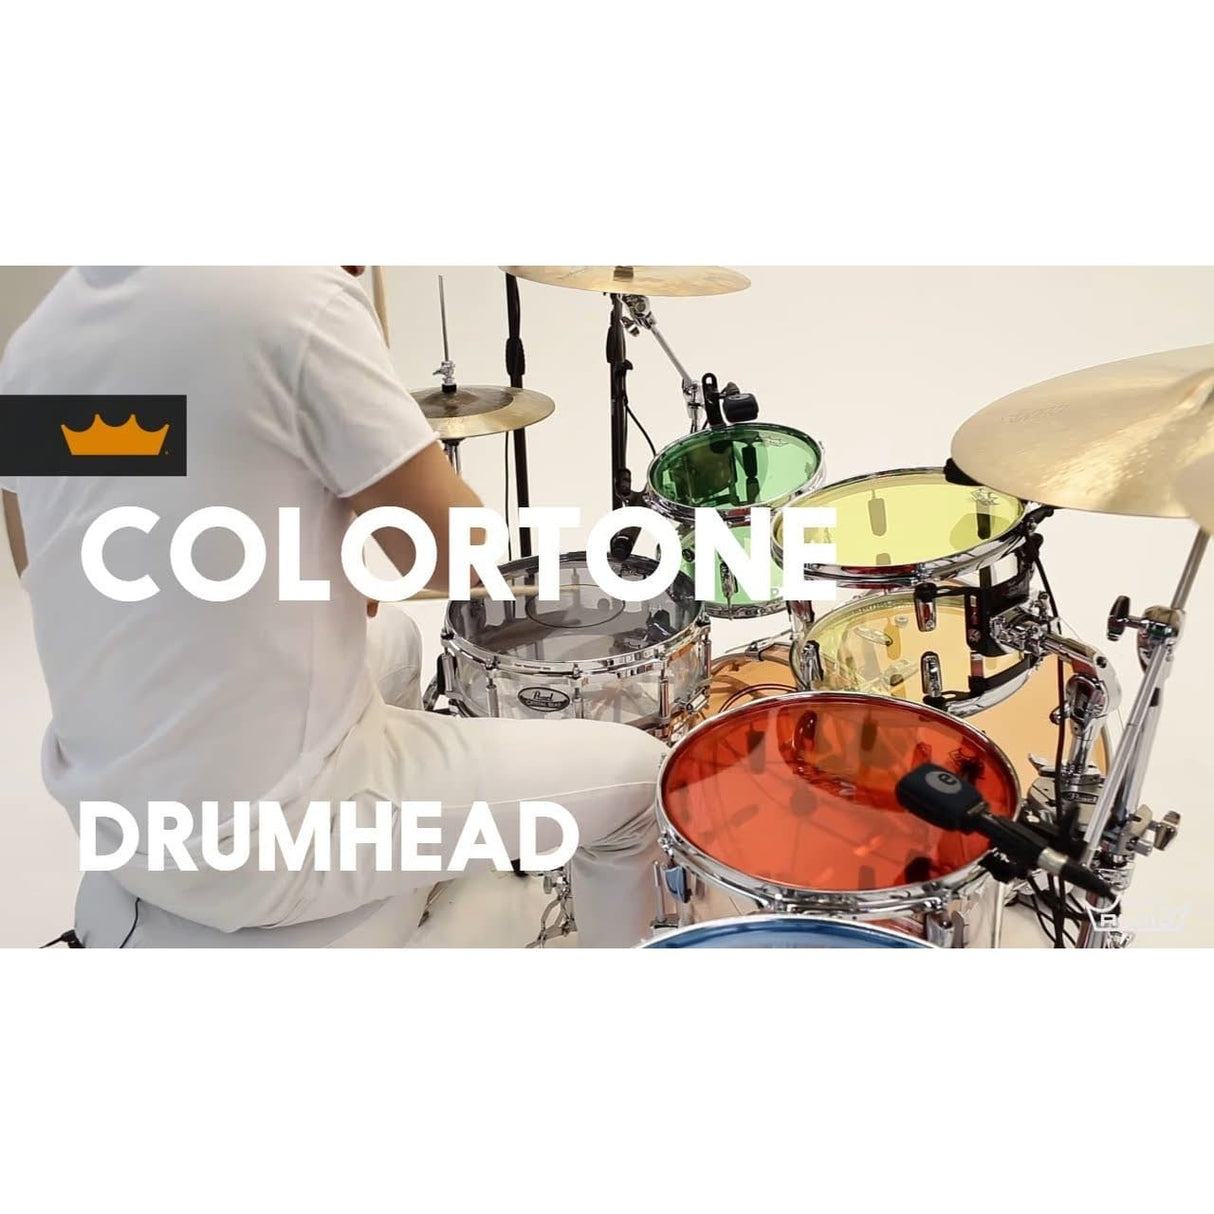 Remo Emperor Colortone Blue 15 Inch Drum Head